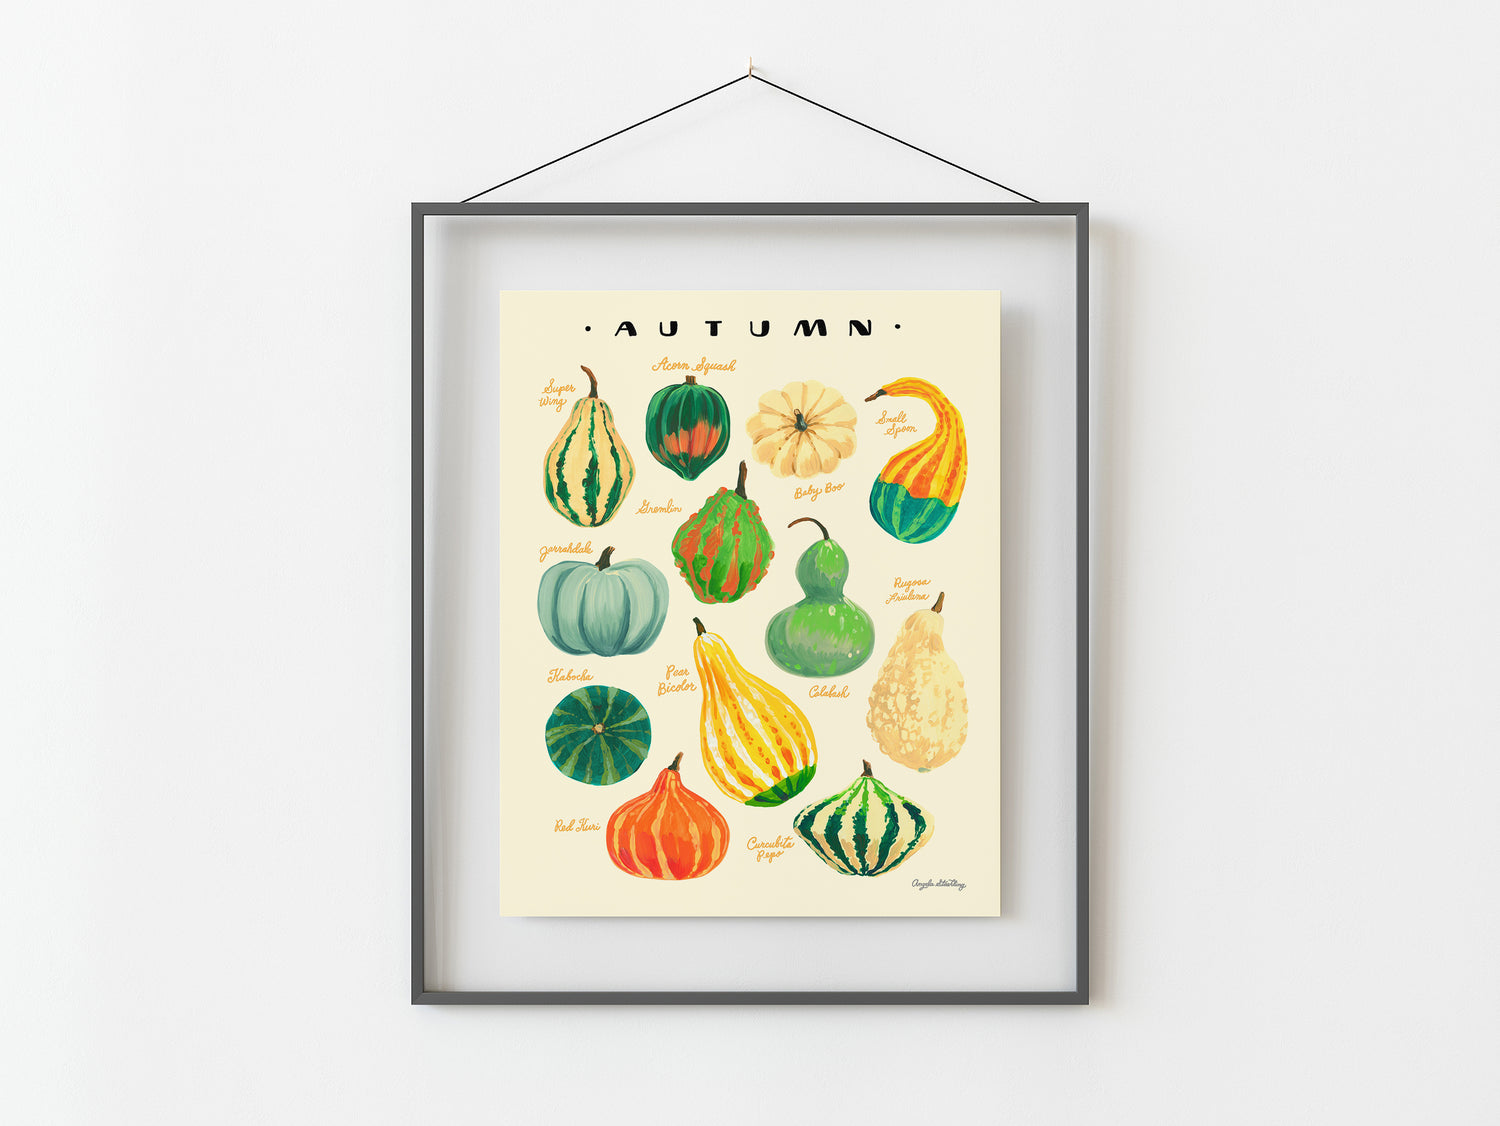 Harvest gourds illustration in gray frame